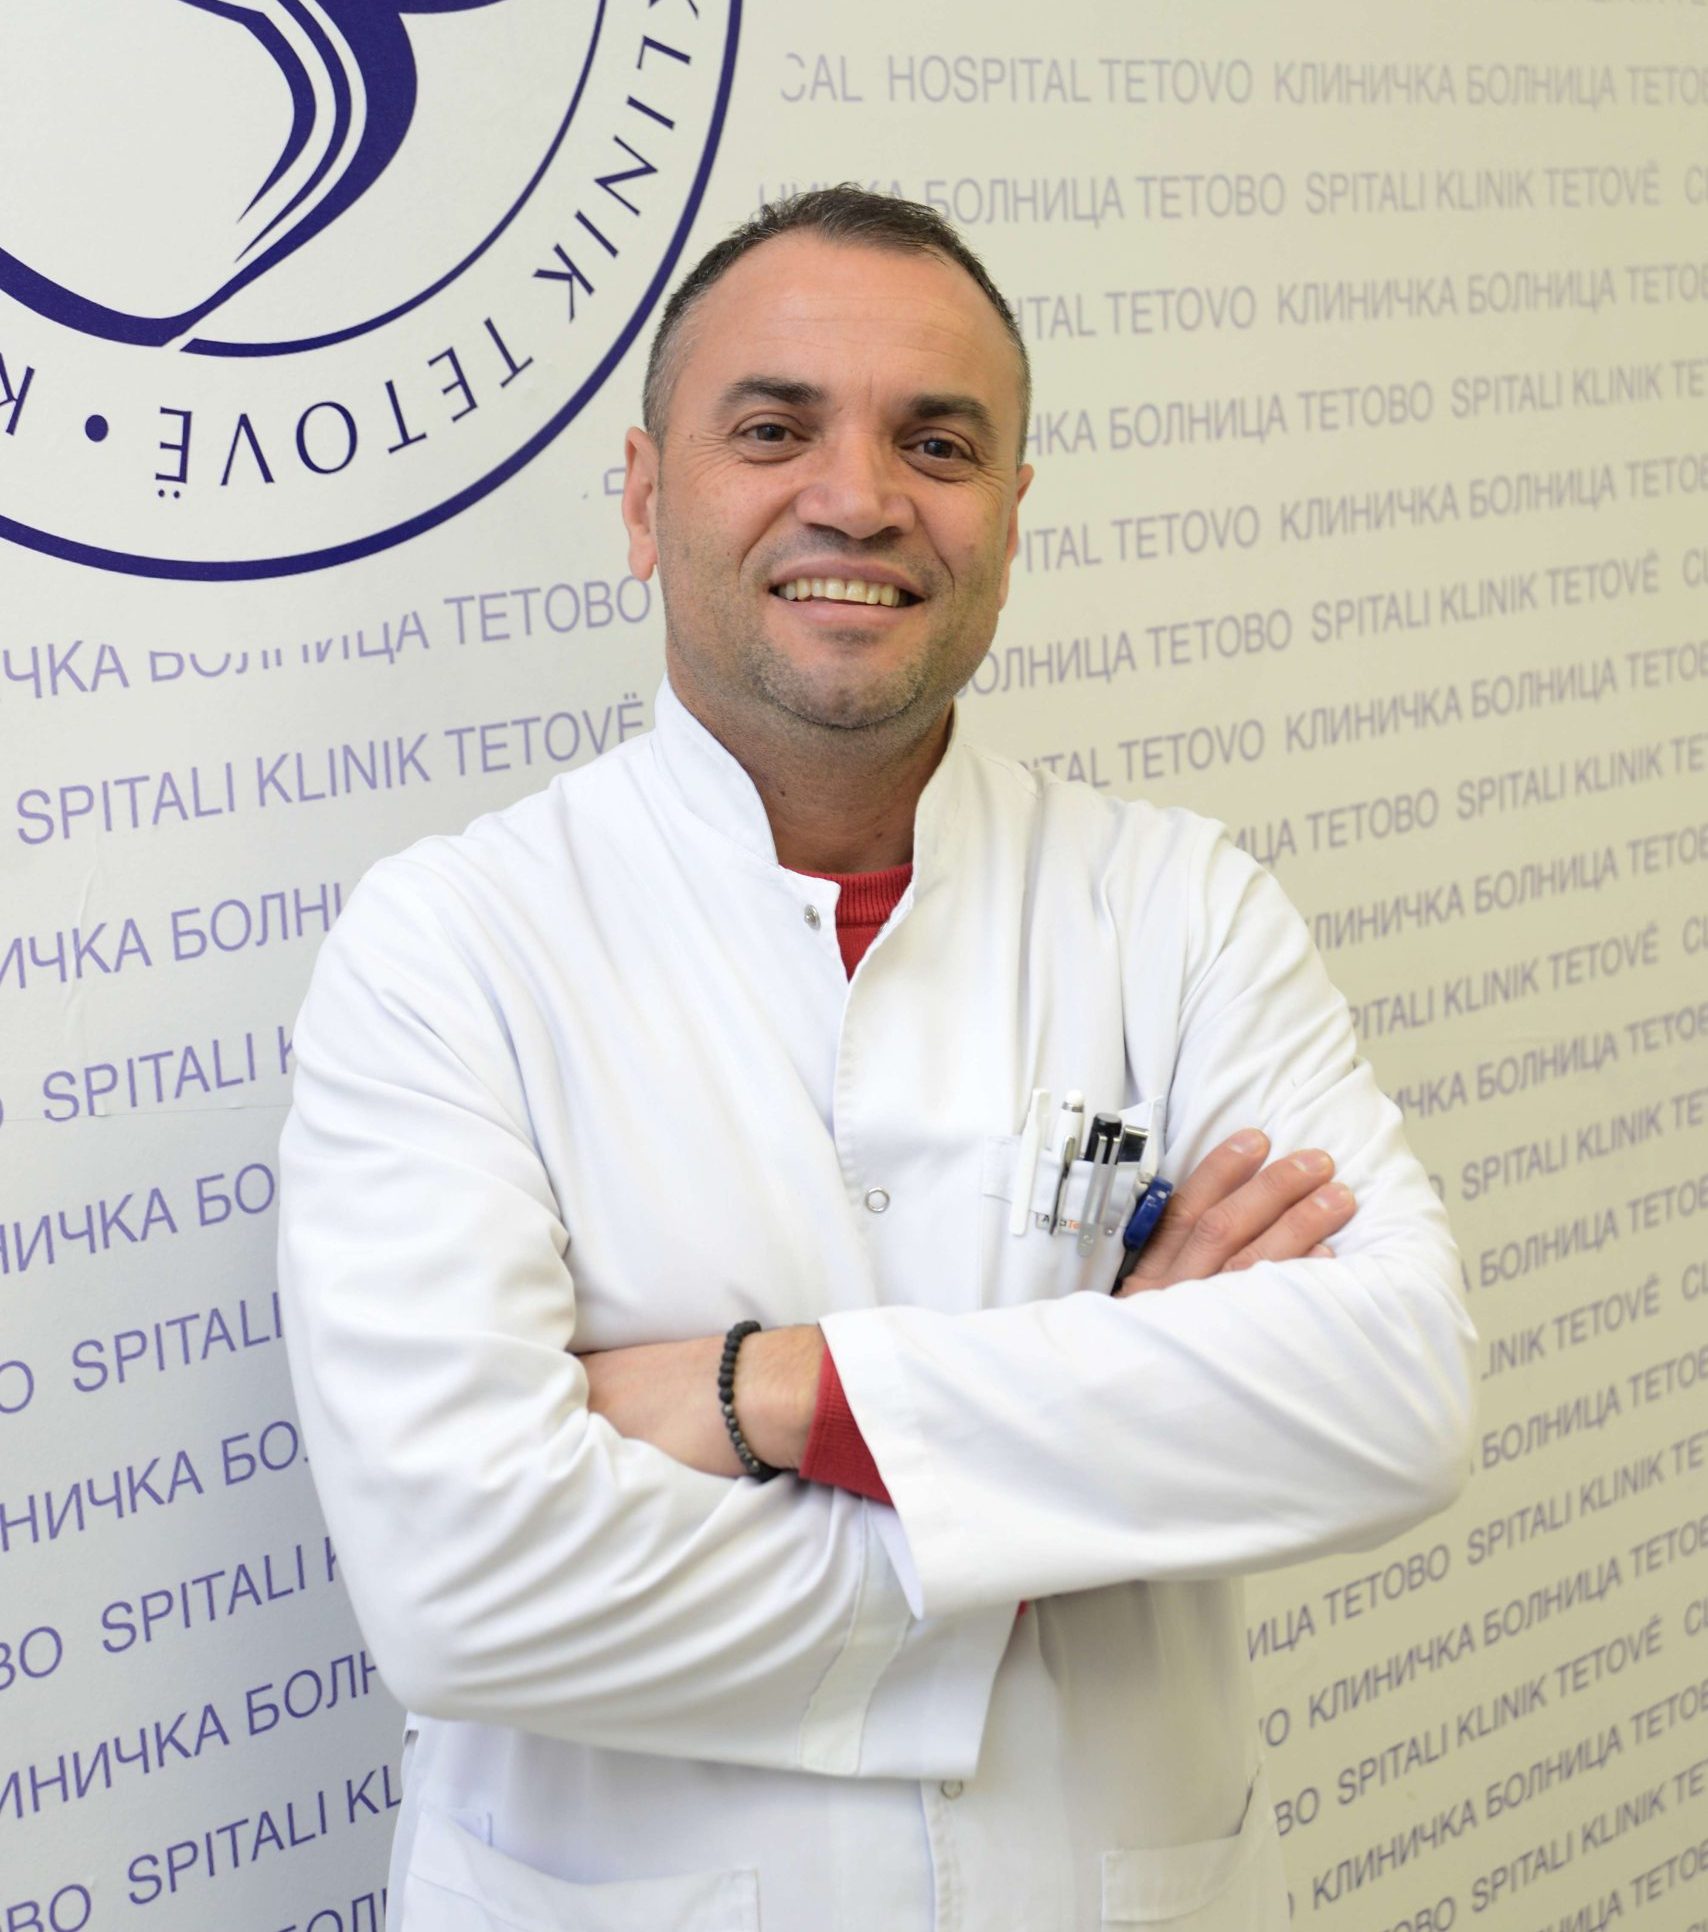 spec. dr. Nadi Rustemi